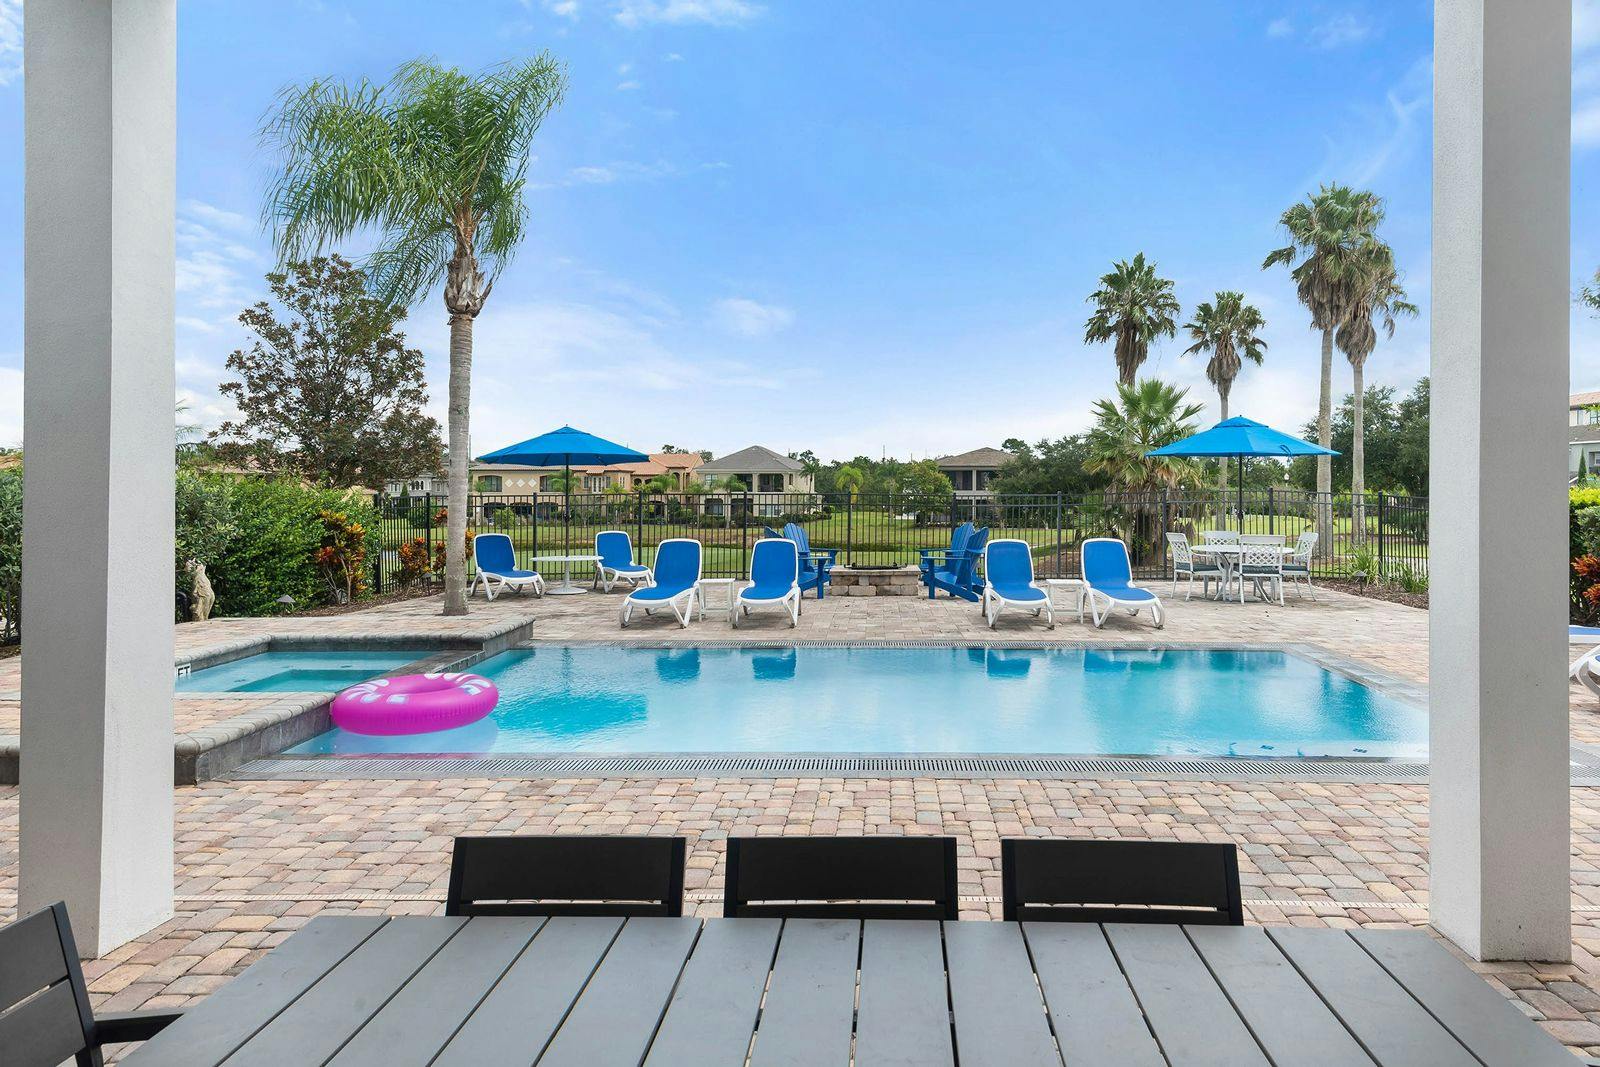 Reunion Resort 597 7 bedroom vacation rentals in Orlando Florida